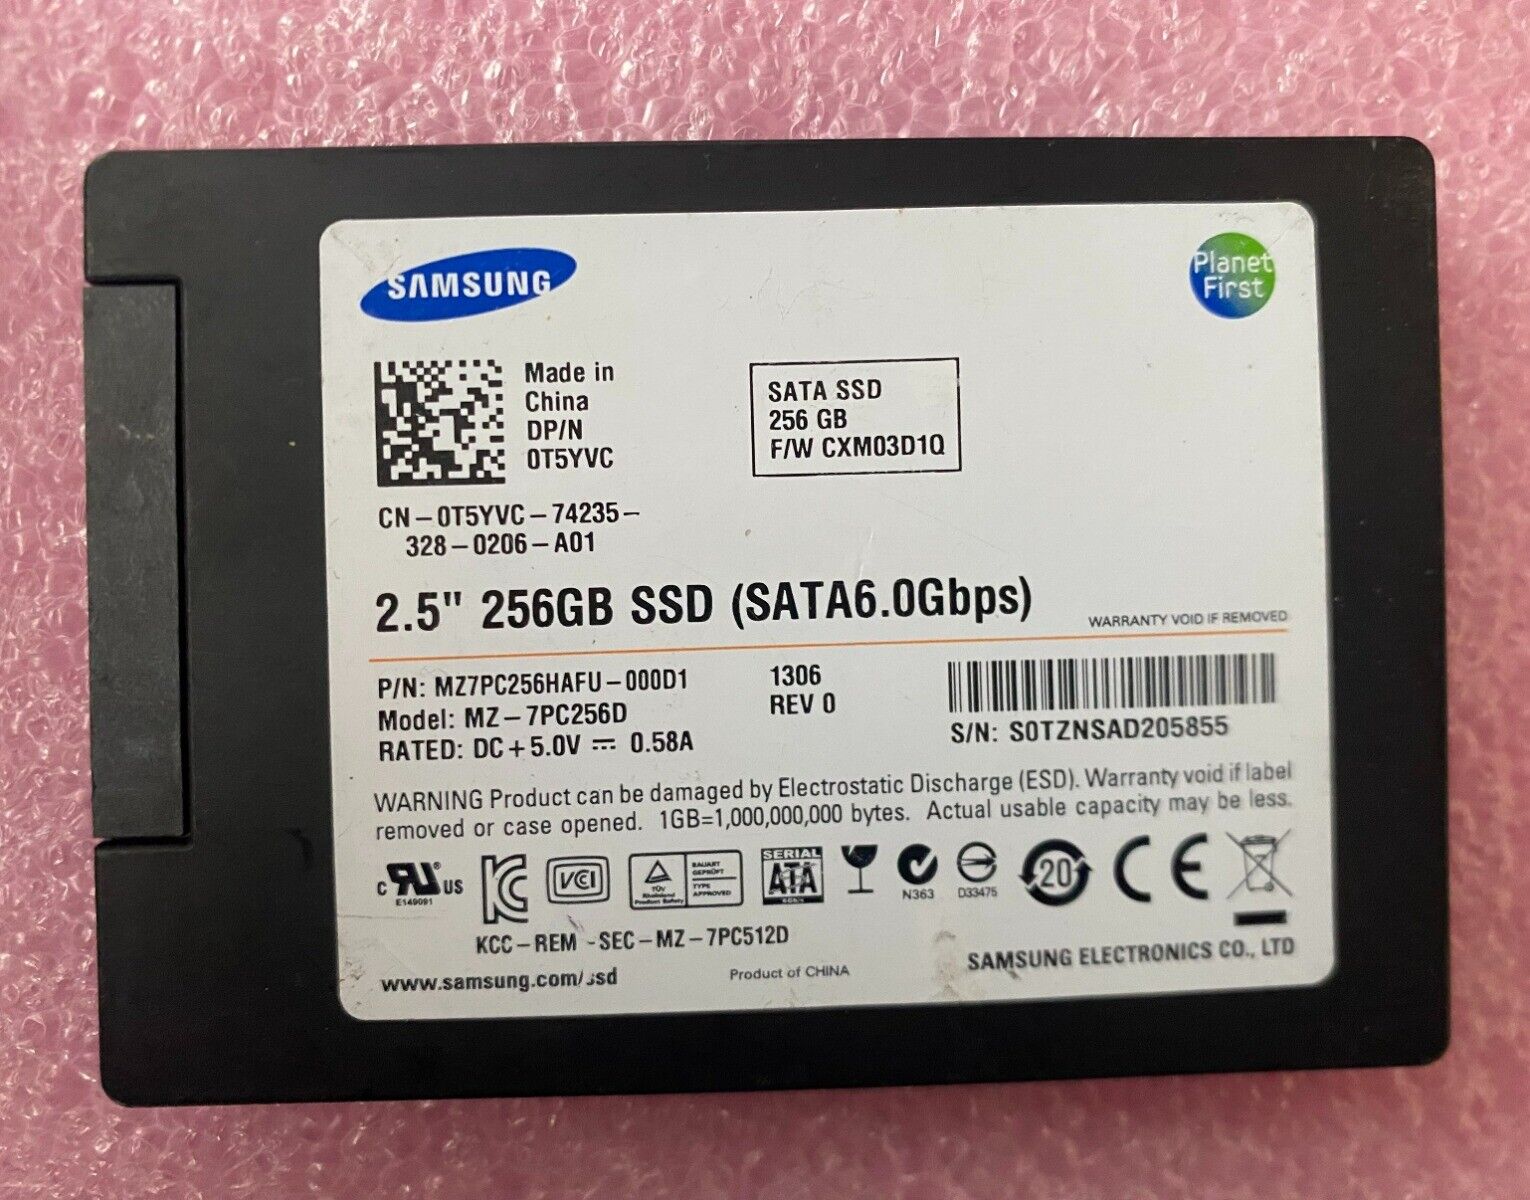 Samsung 256GB MZ-7PC256D MZ7PC256HAFU-000D1 SATA 2.5